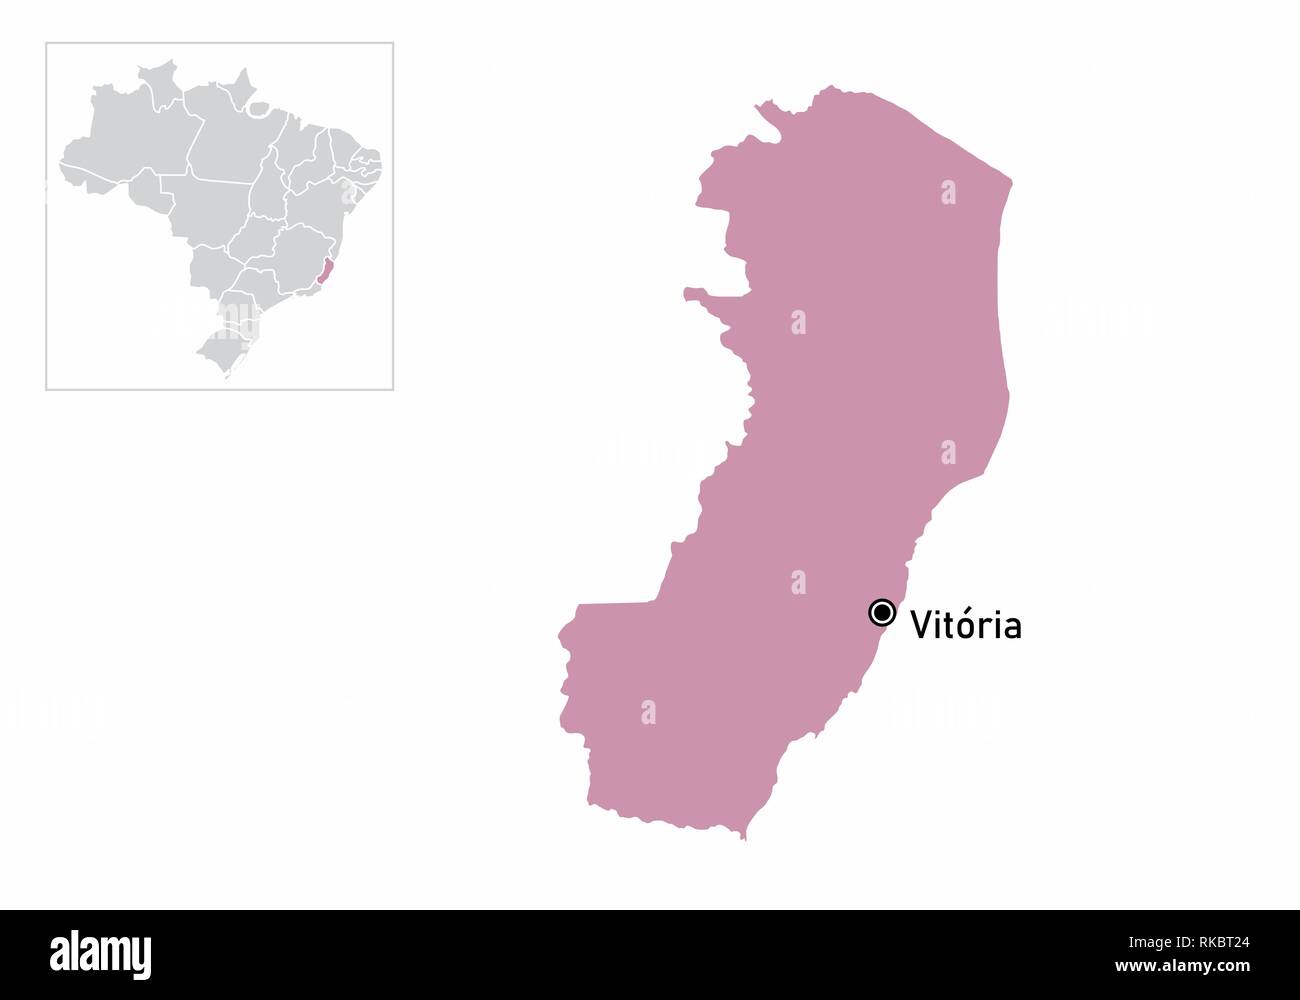 Abbildung der Espirito Santo Staat und seine Lage in Brasilien Karte Stock Vektor